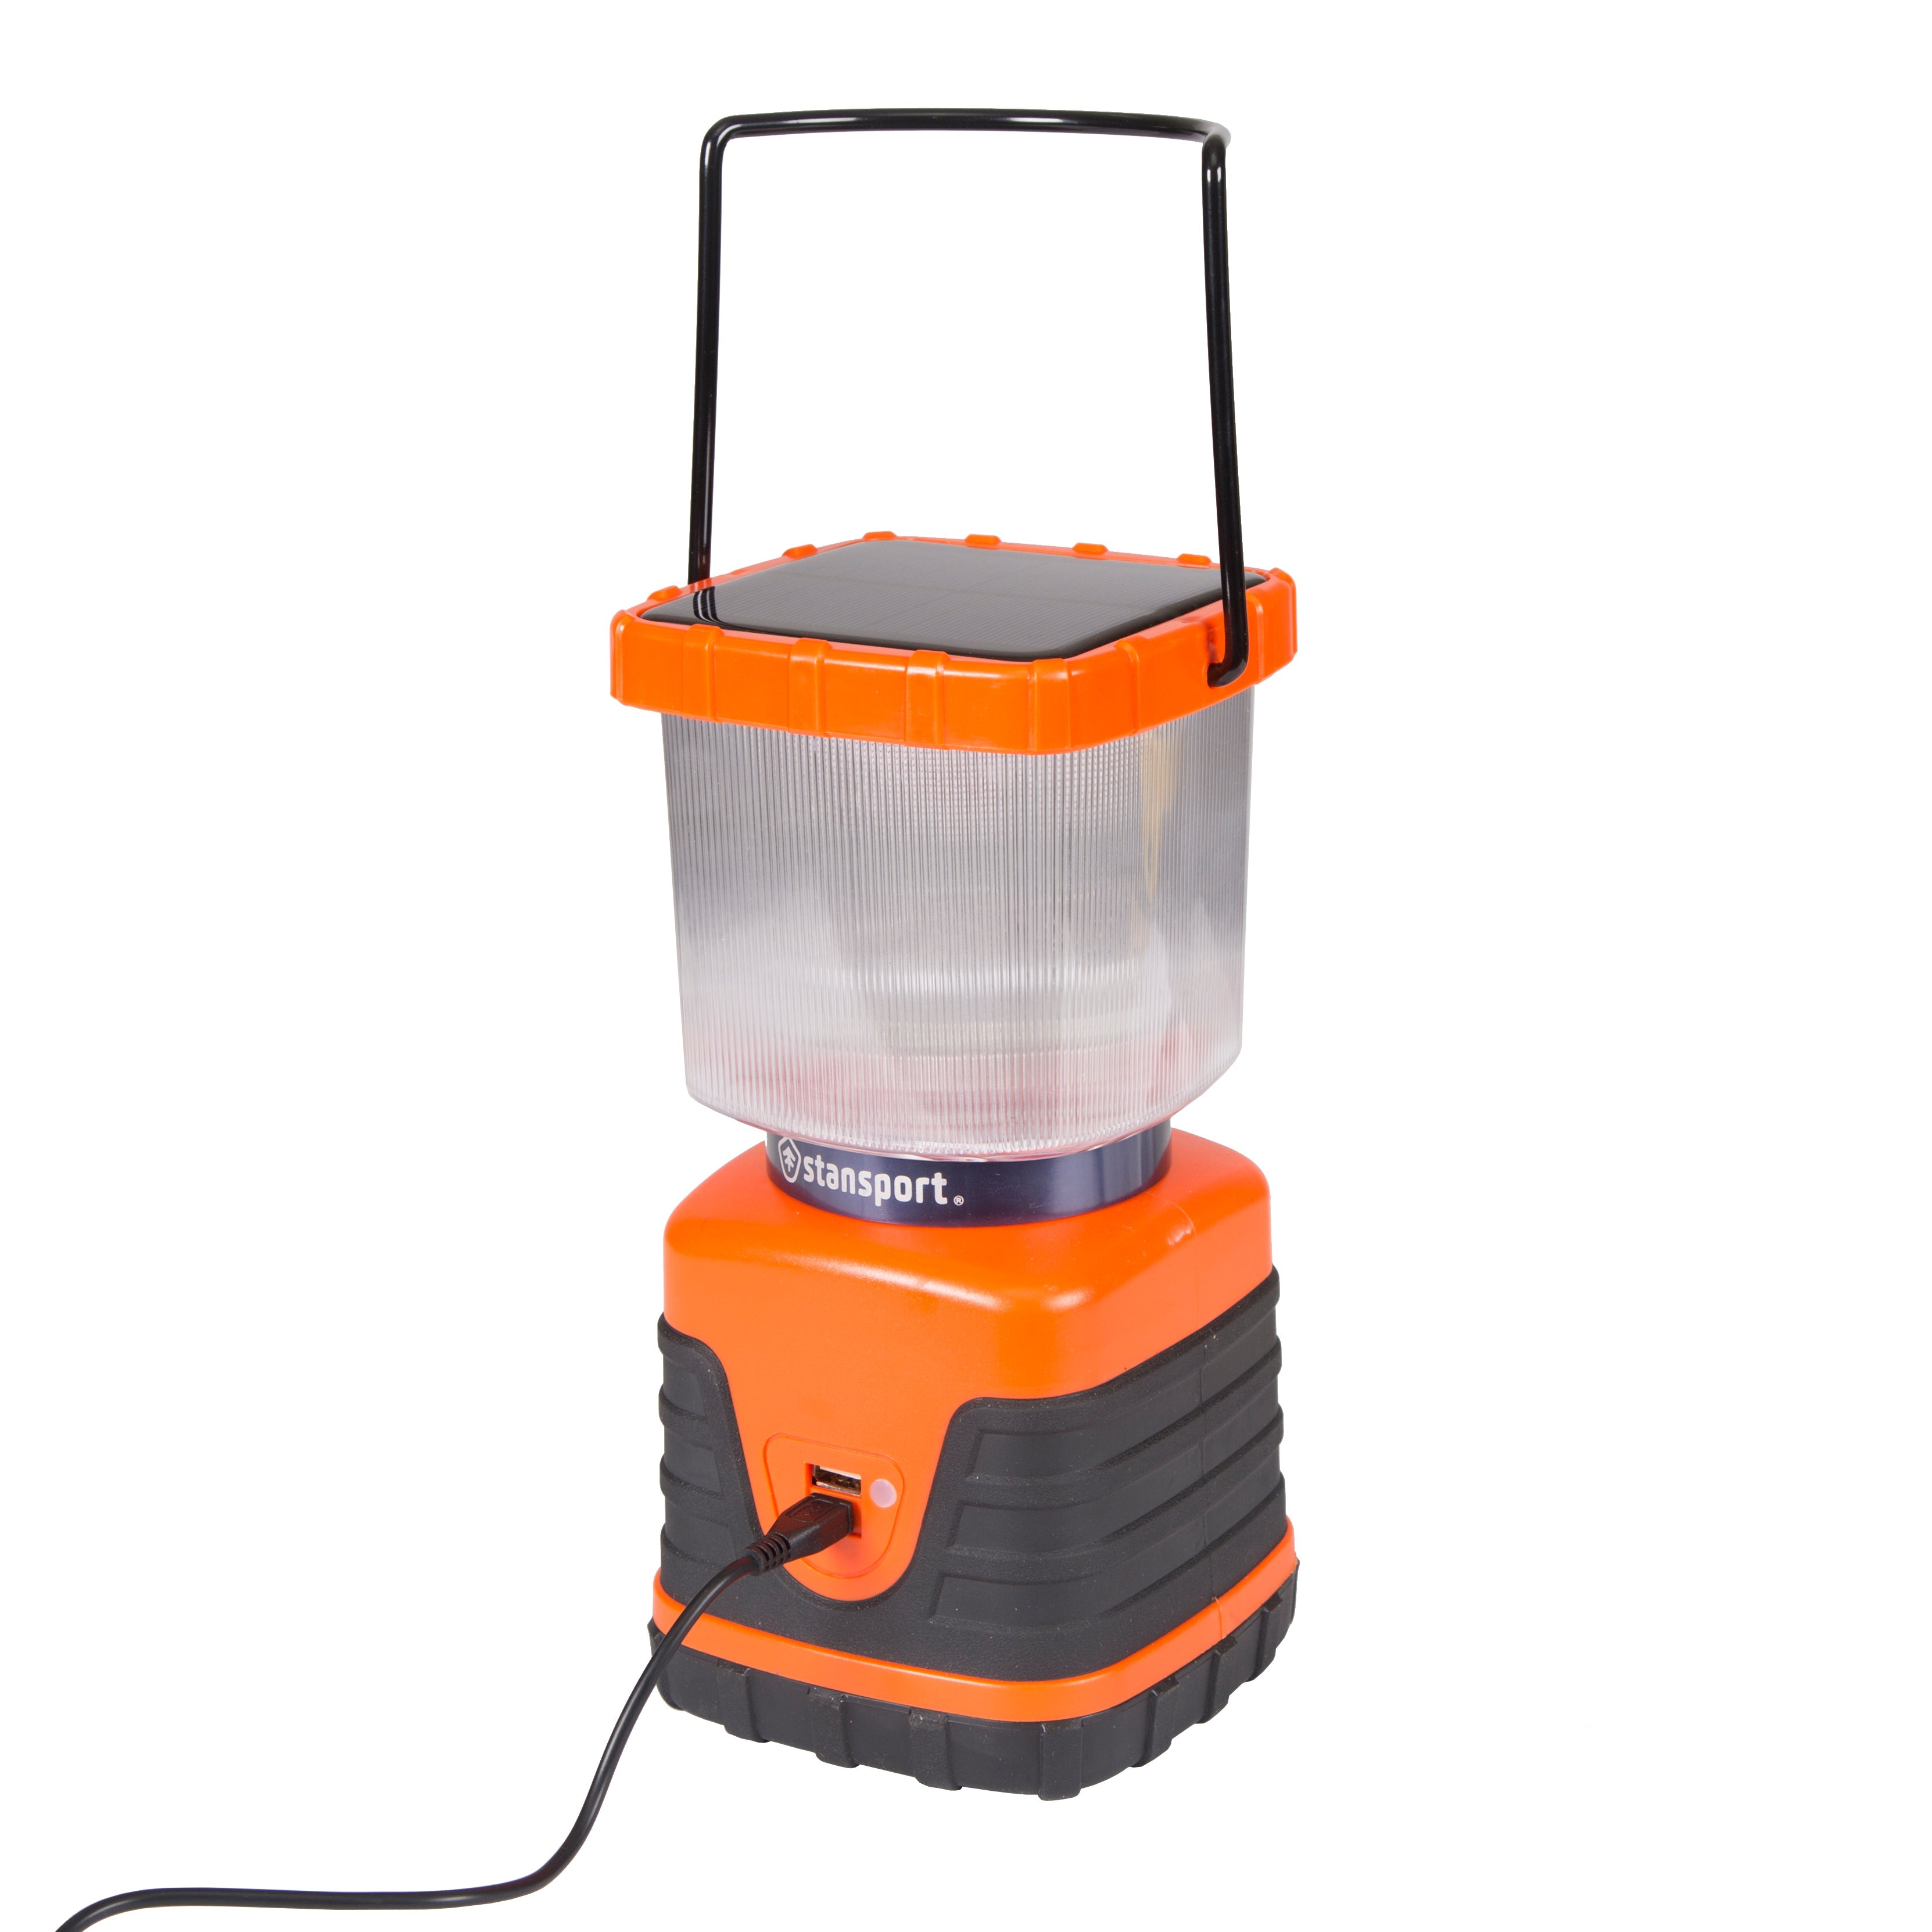 Solar 600 Lumens Lantern With Cree Bulb, Usb Plug In